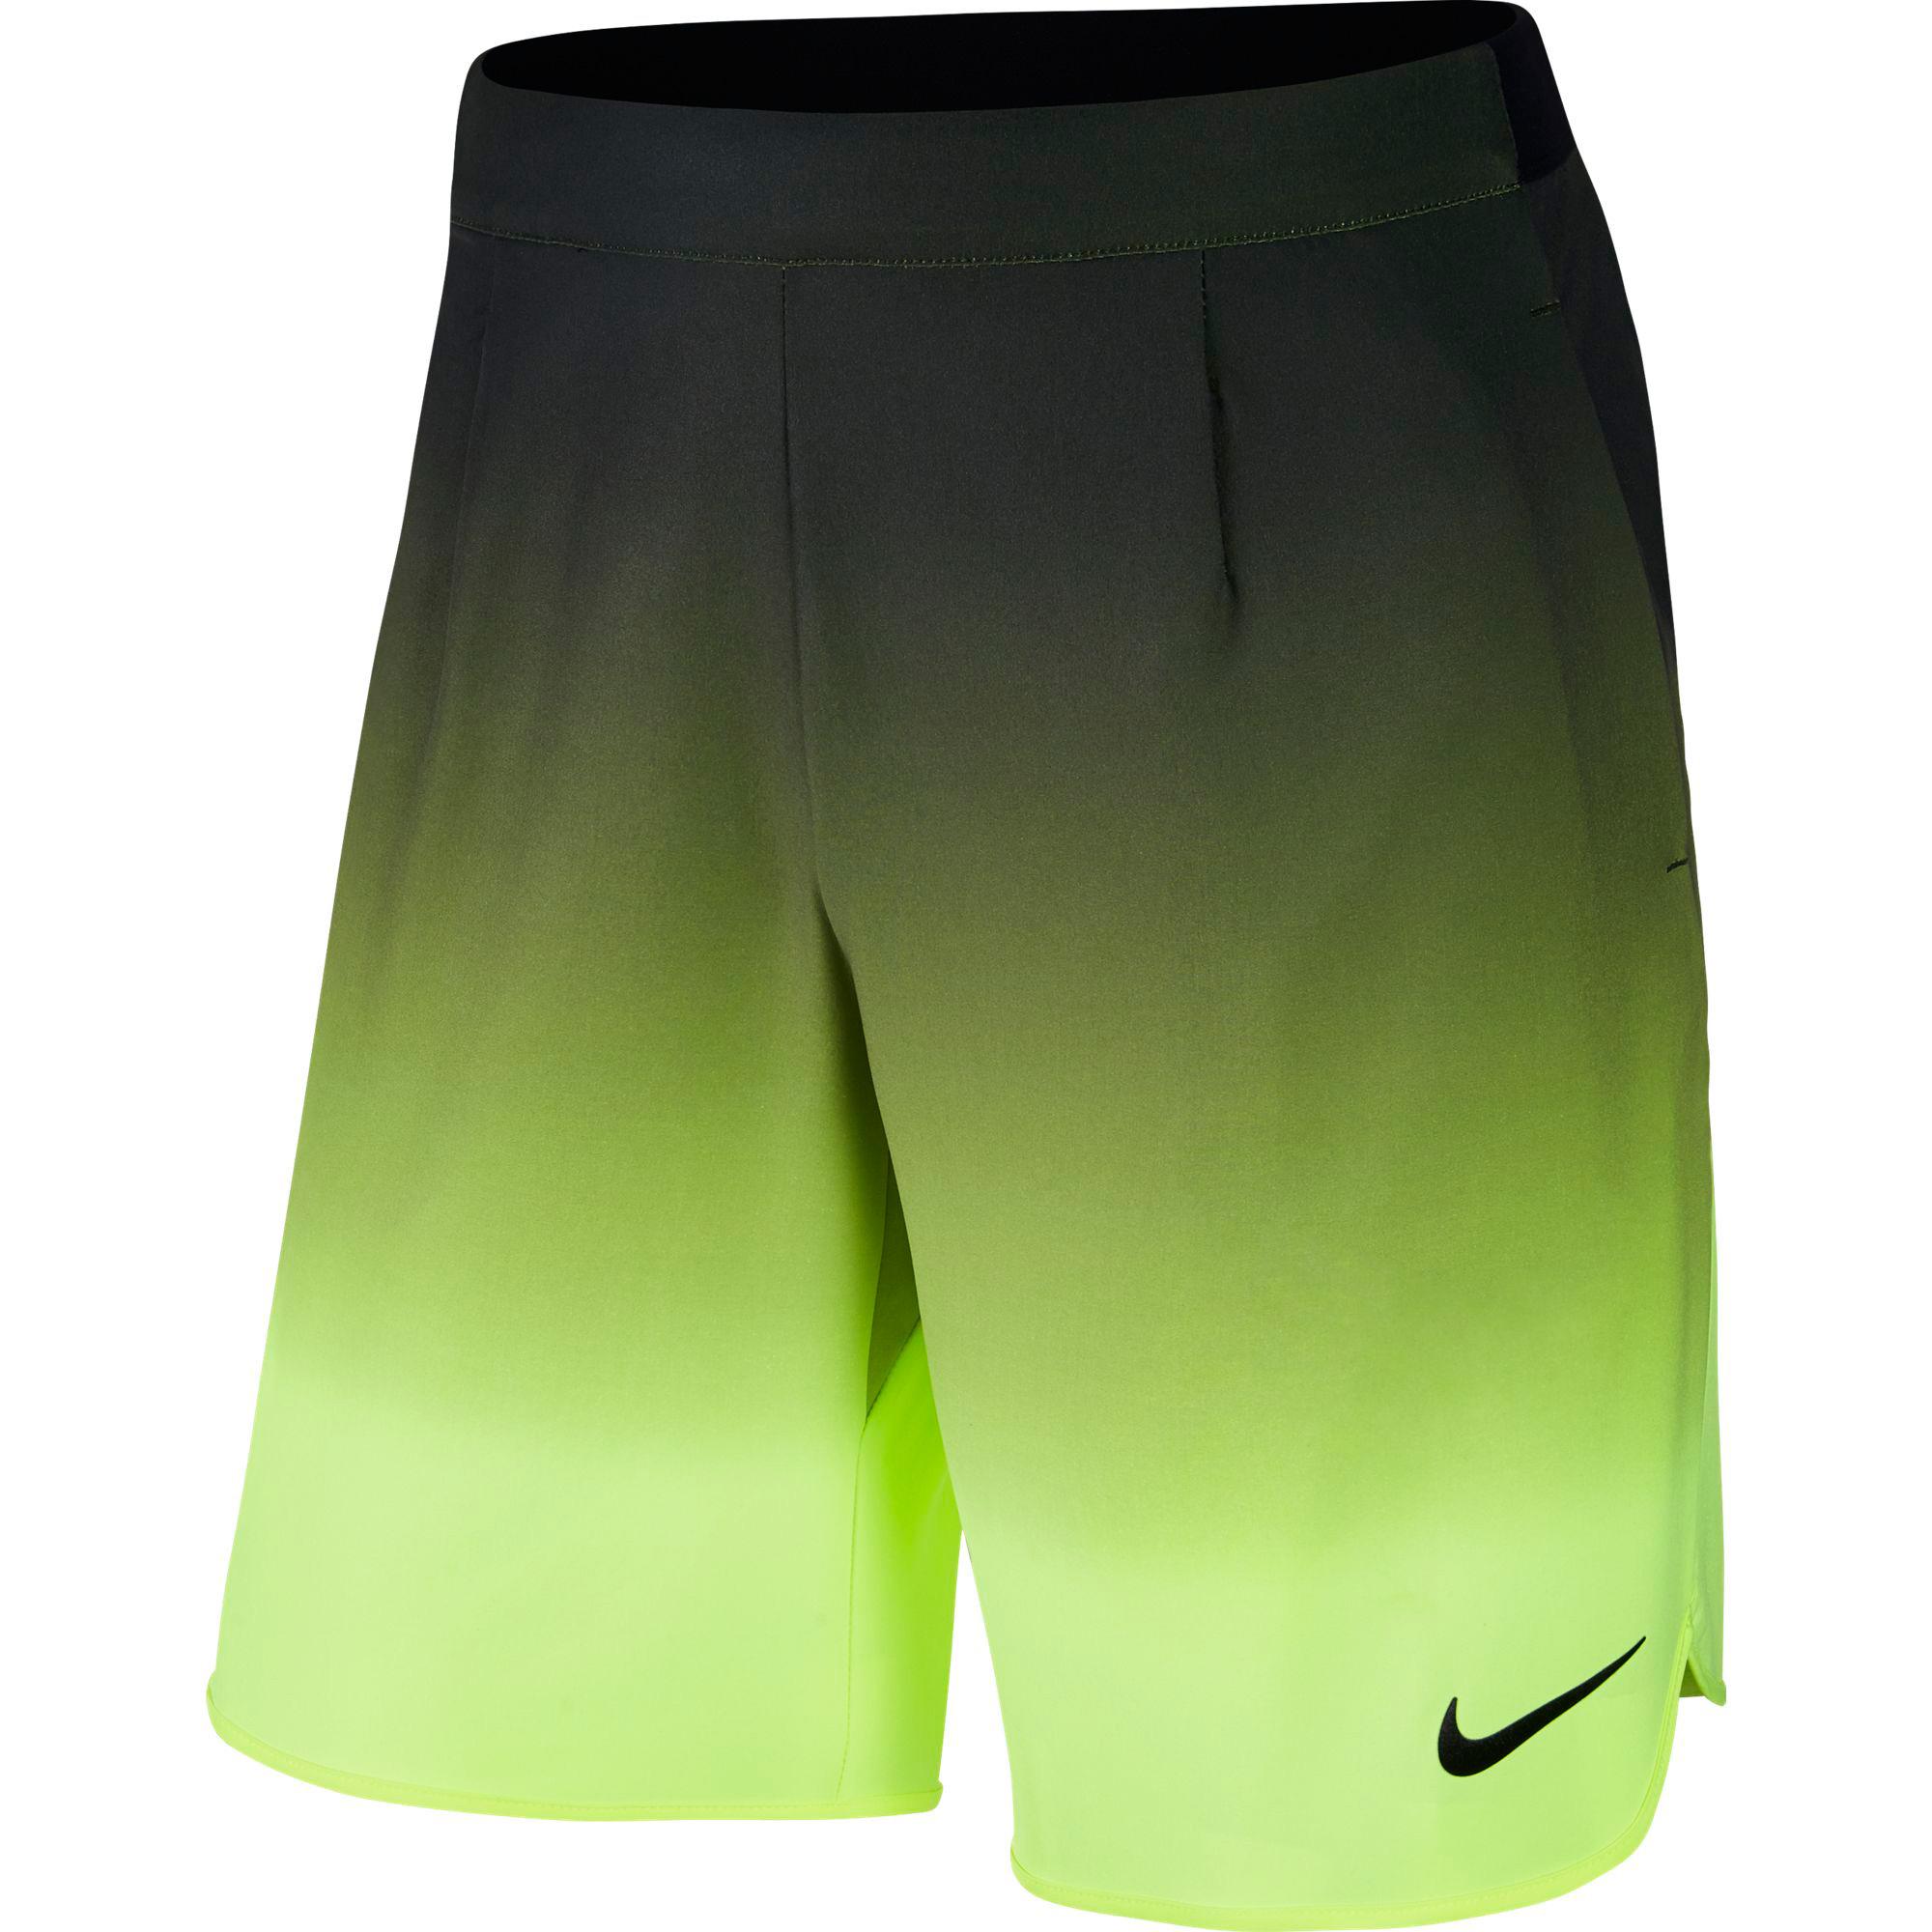 Fusión Cuna Eso Nike Mens Ace Gladiator 9" Shorts - Black/Volt - Tennisnuts.com